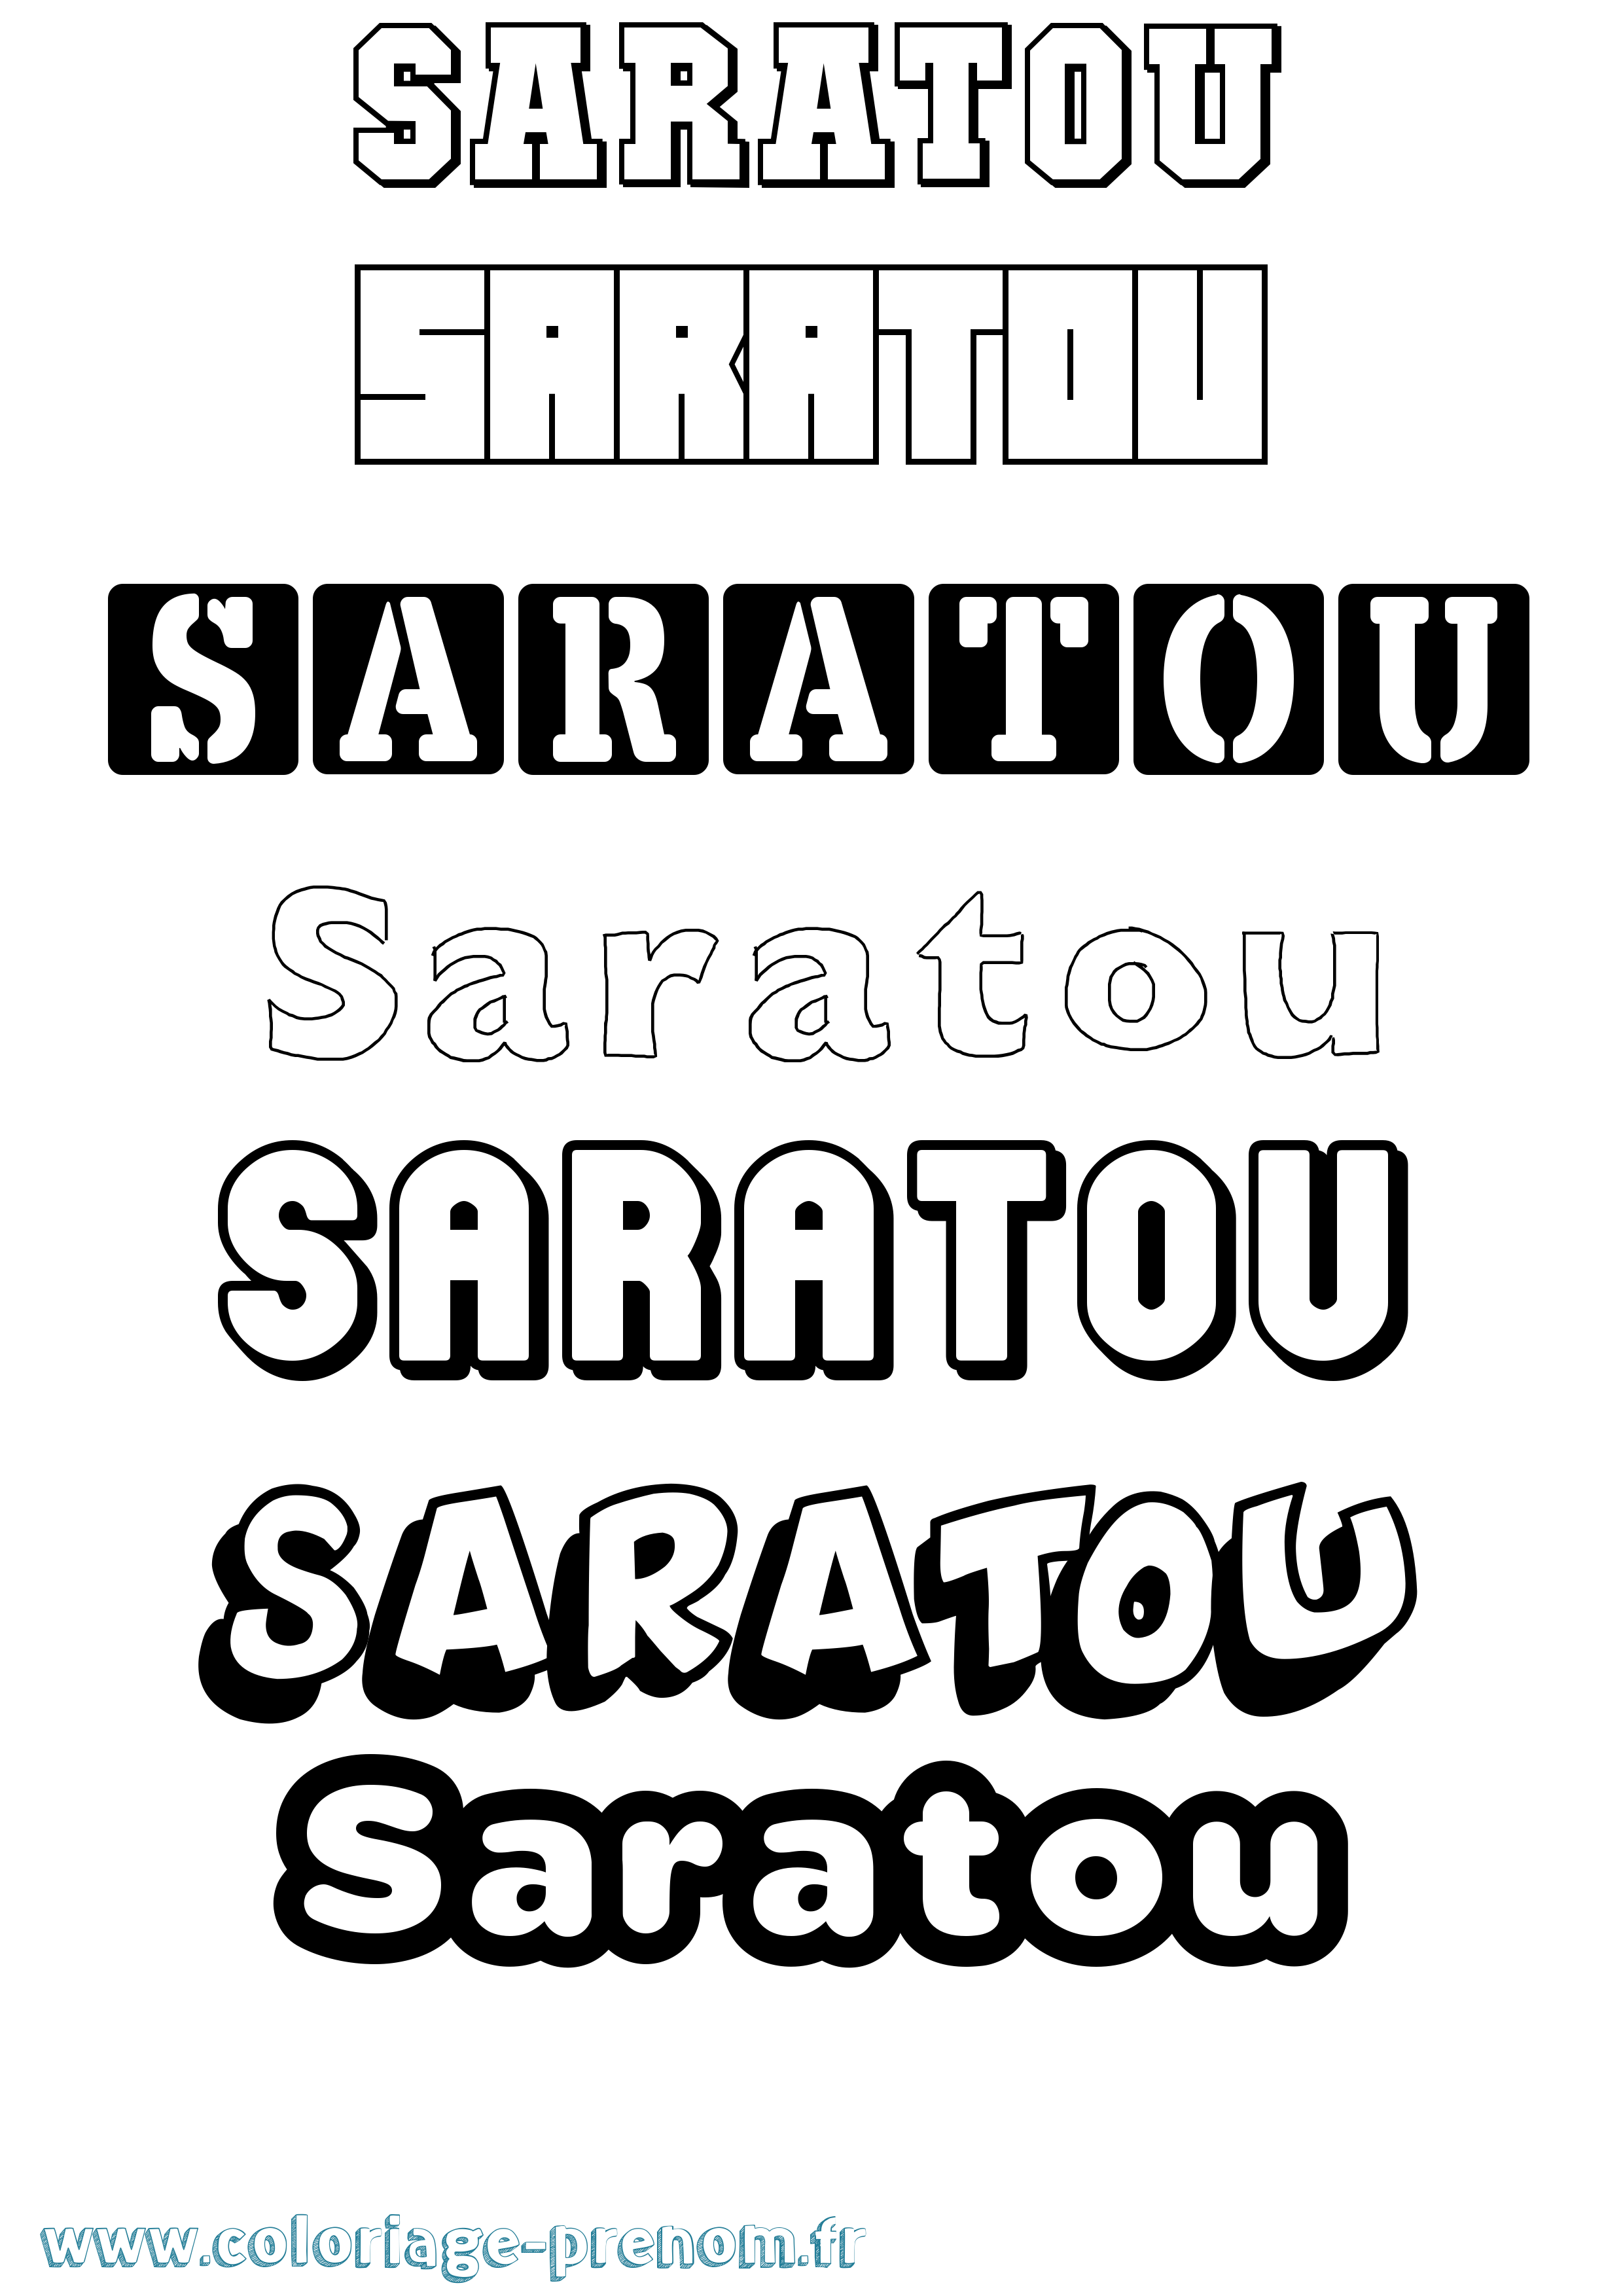 Coloriage prénom Saratou Simple